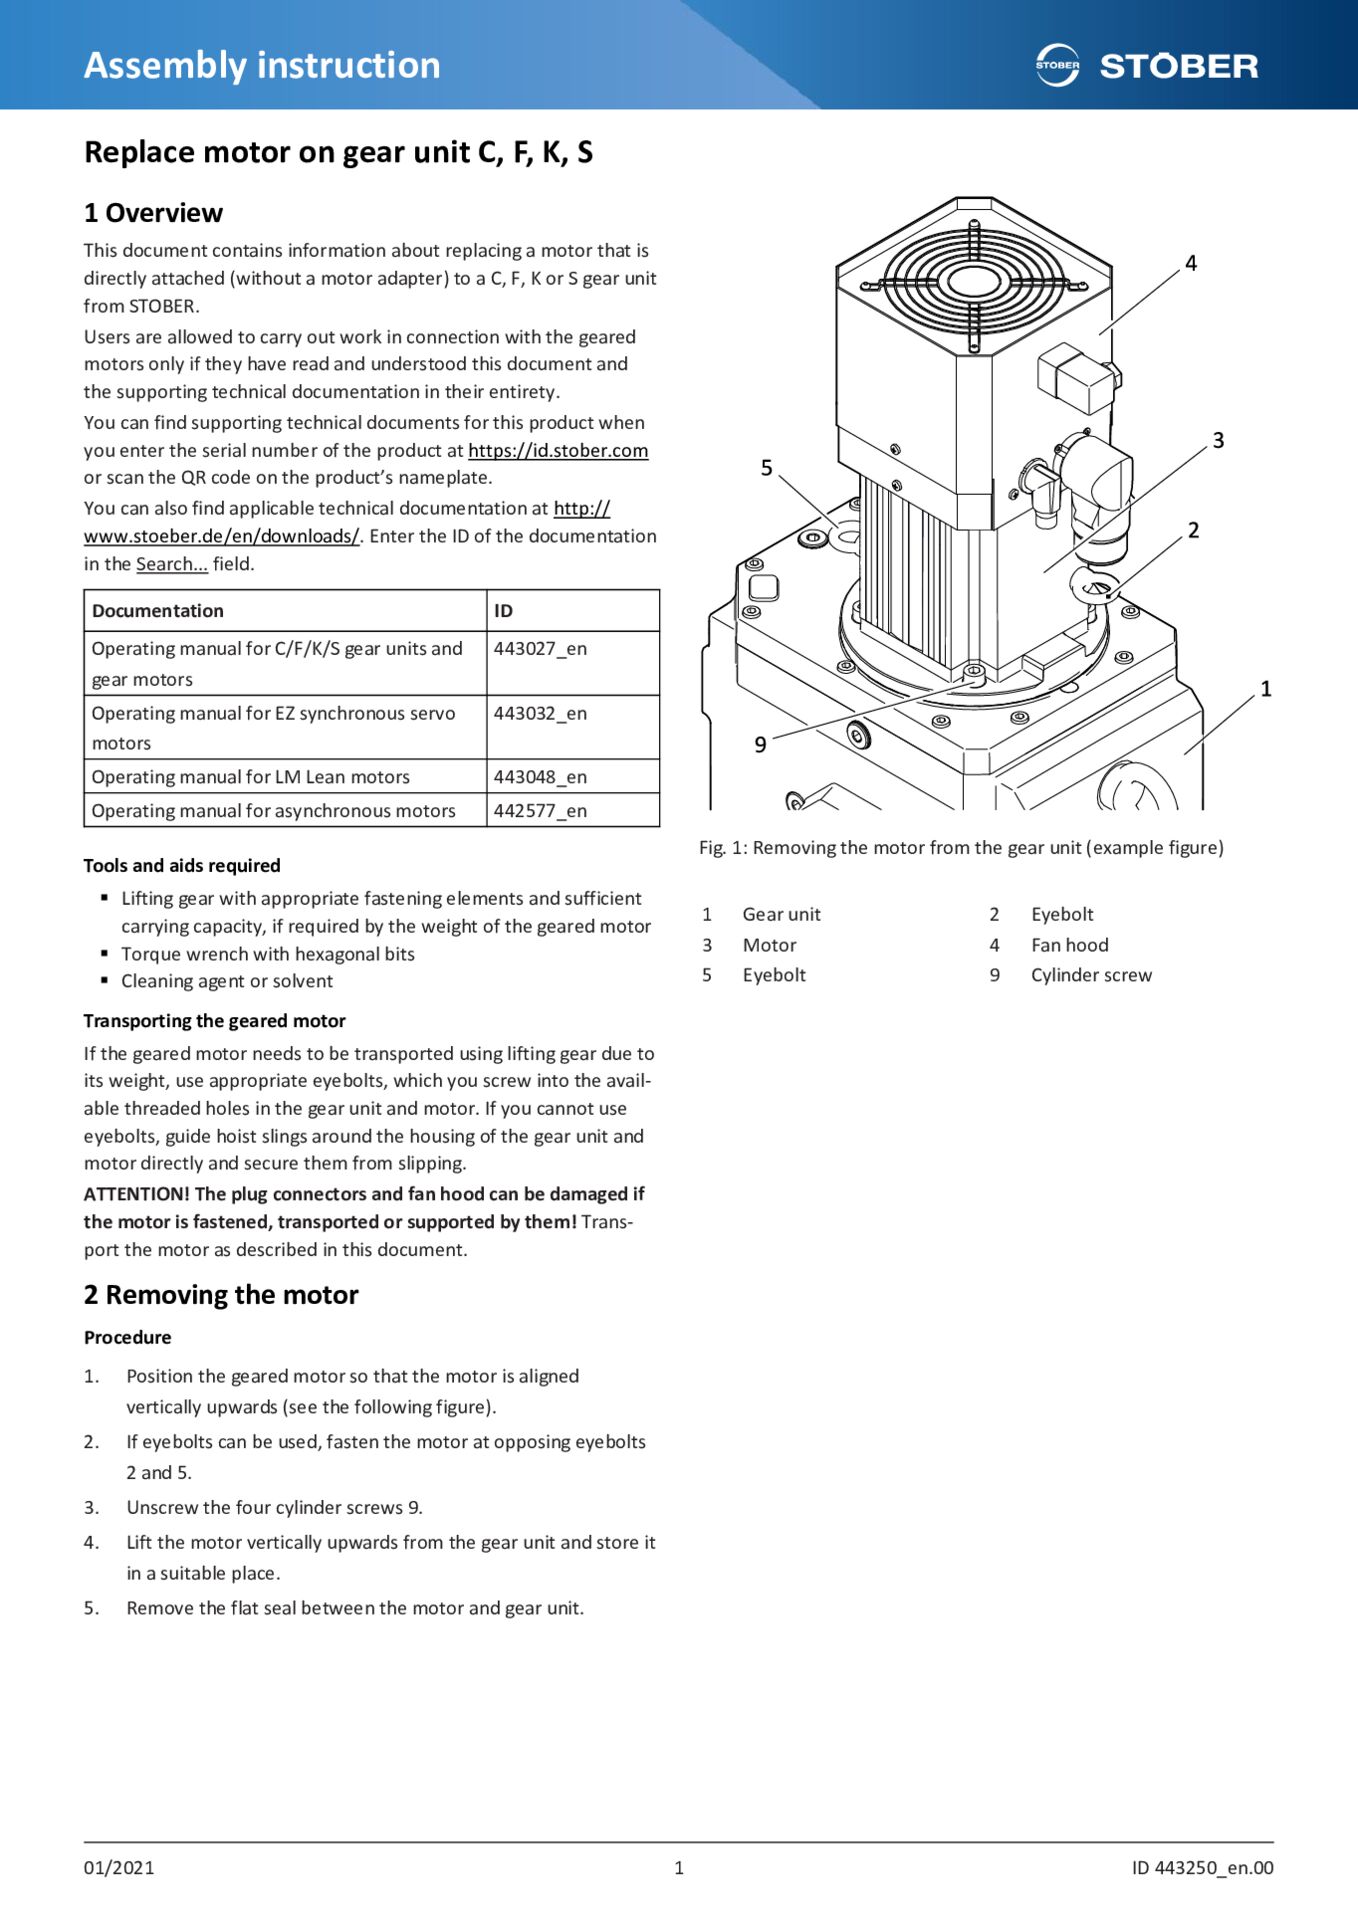 Assembly instruction Replace motor on gear unit C F K S